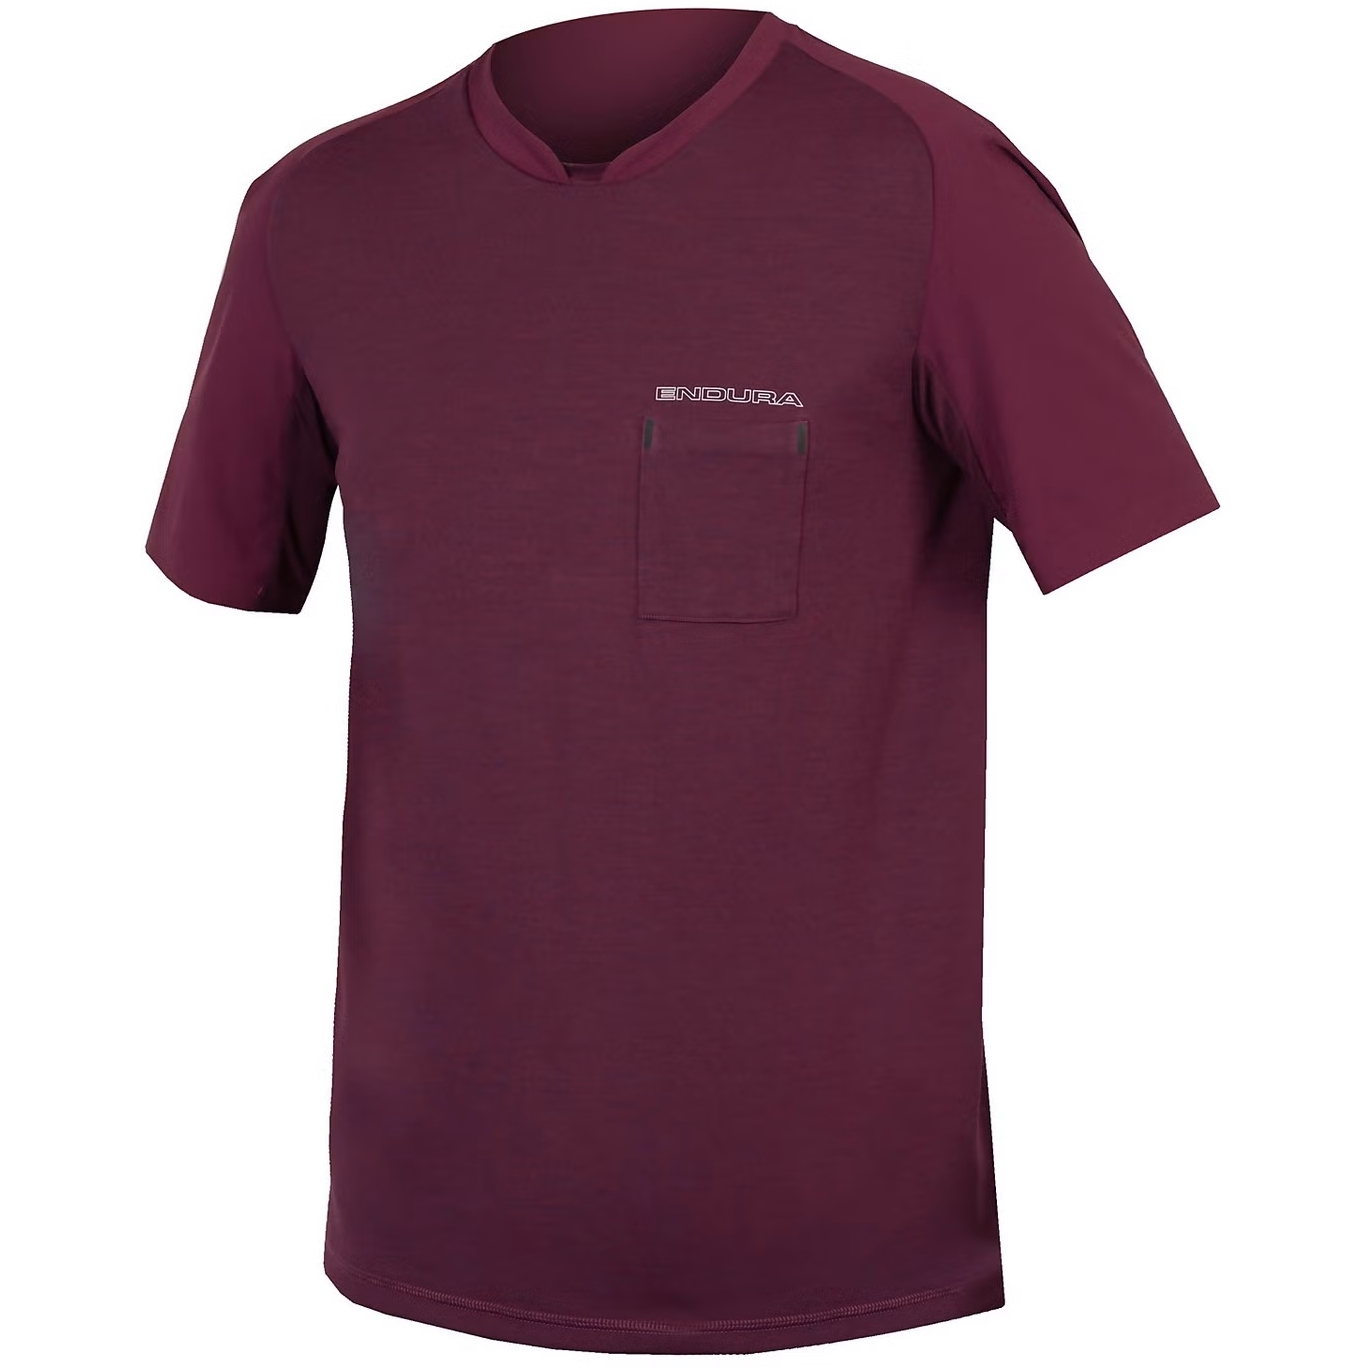 Produktbild von Endura GV500 Foyle T-Shirt Herren - aubergine